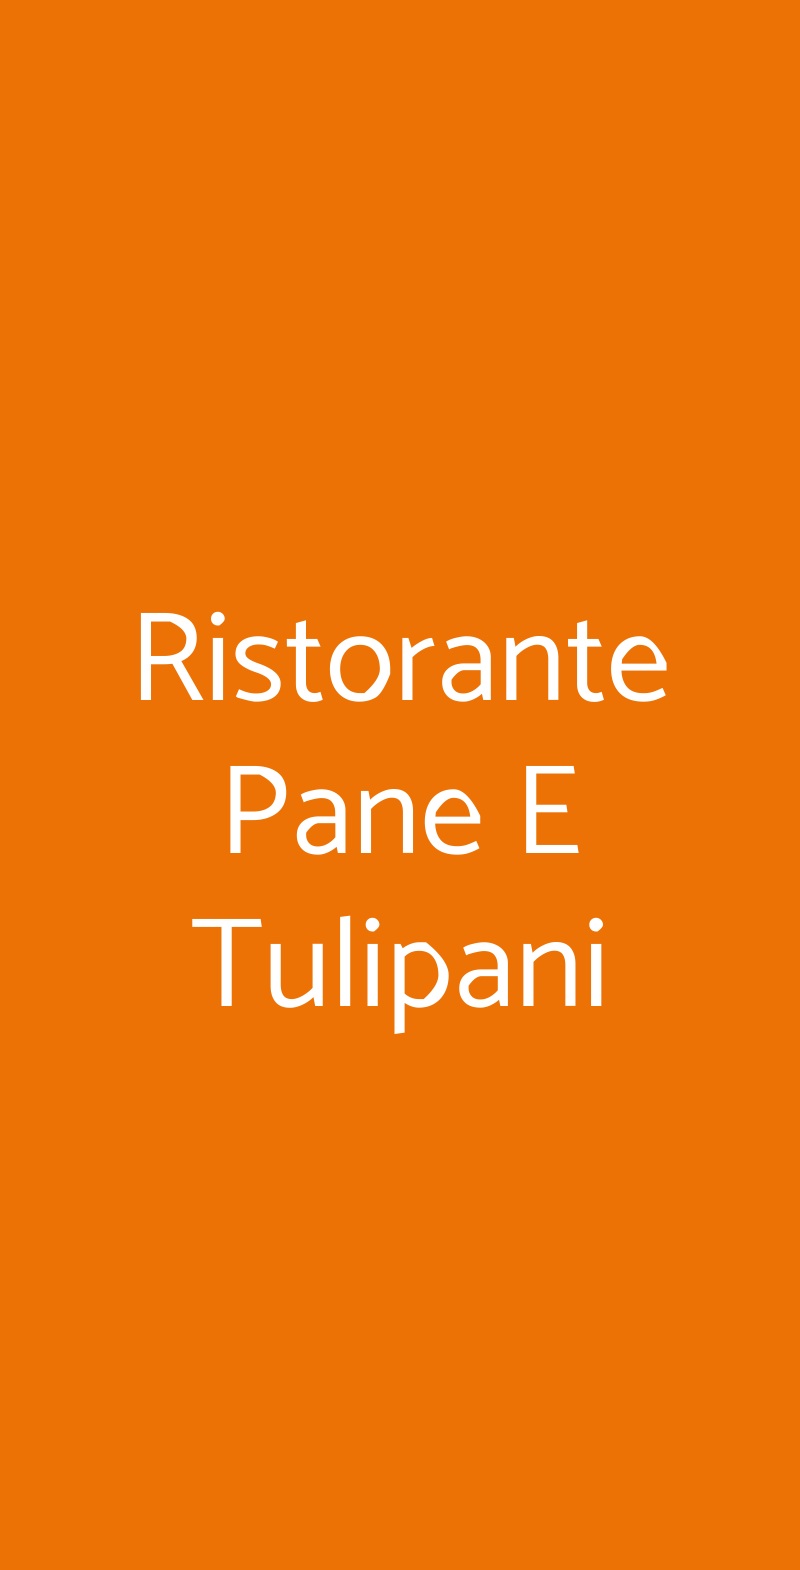 Ristorante Pane E Tulipani Milano menù 1 pagina